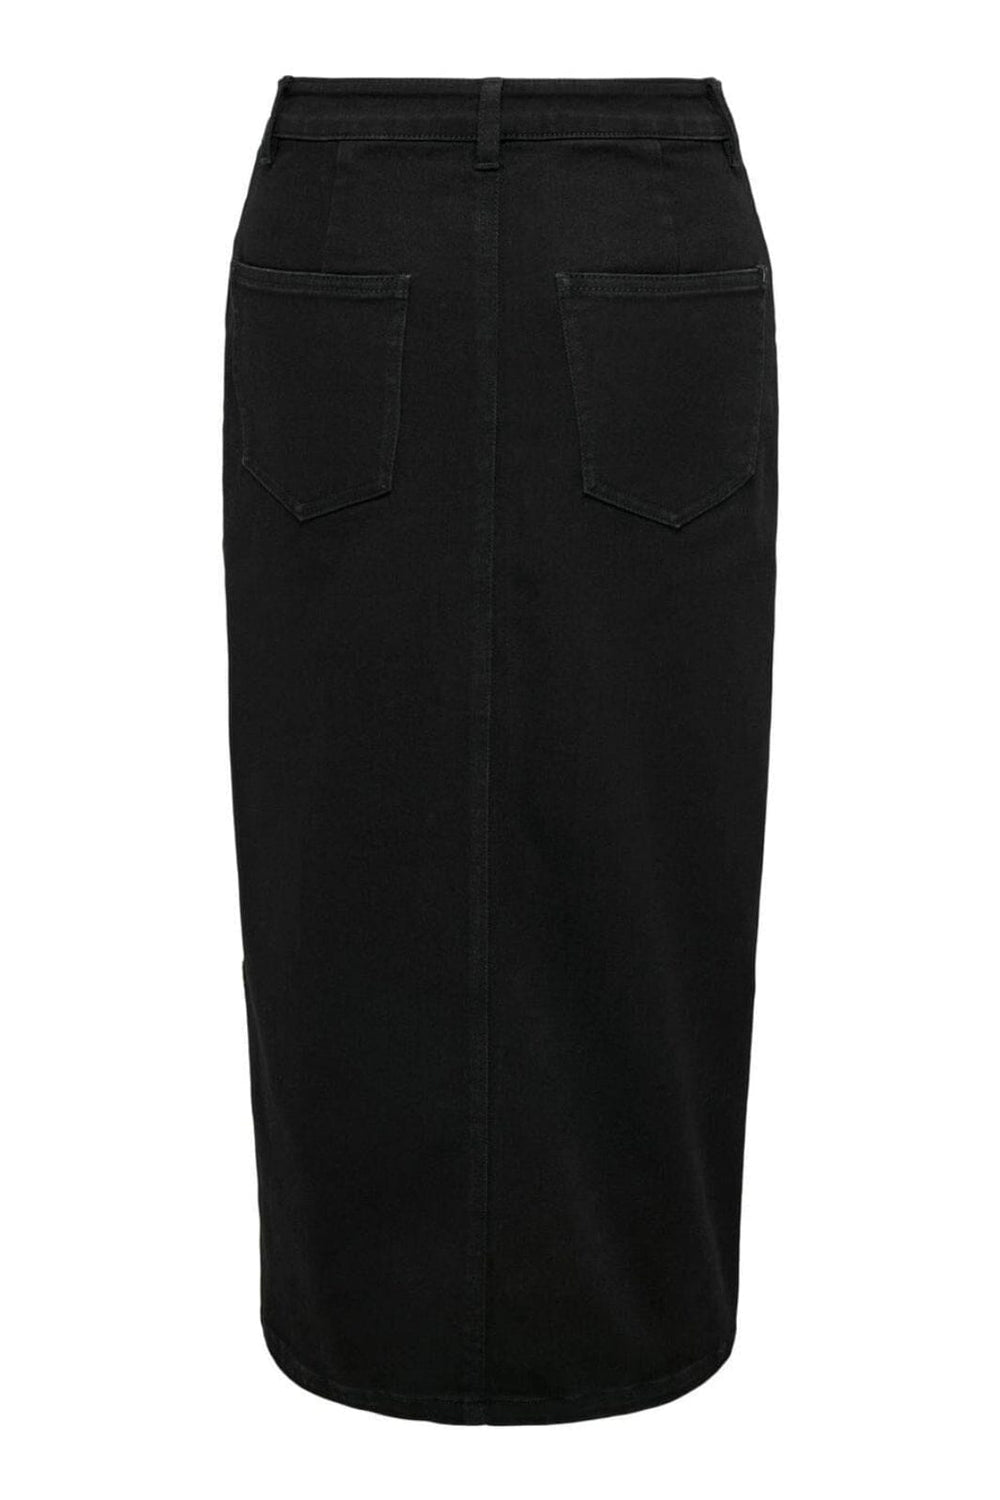 Only - Onlsiri Front Slit Skirt Gua - 4507661 Black Denim Nederdele 